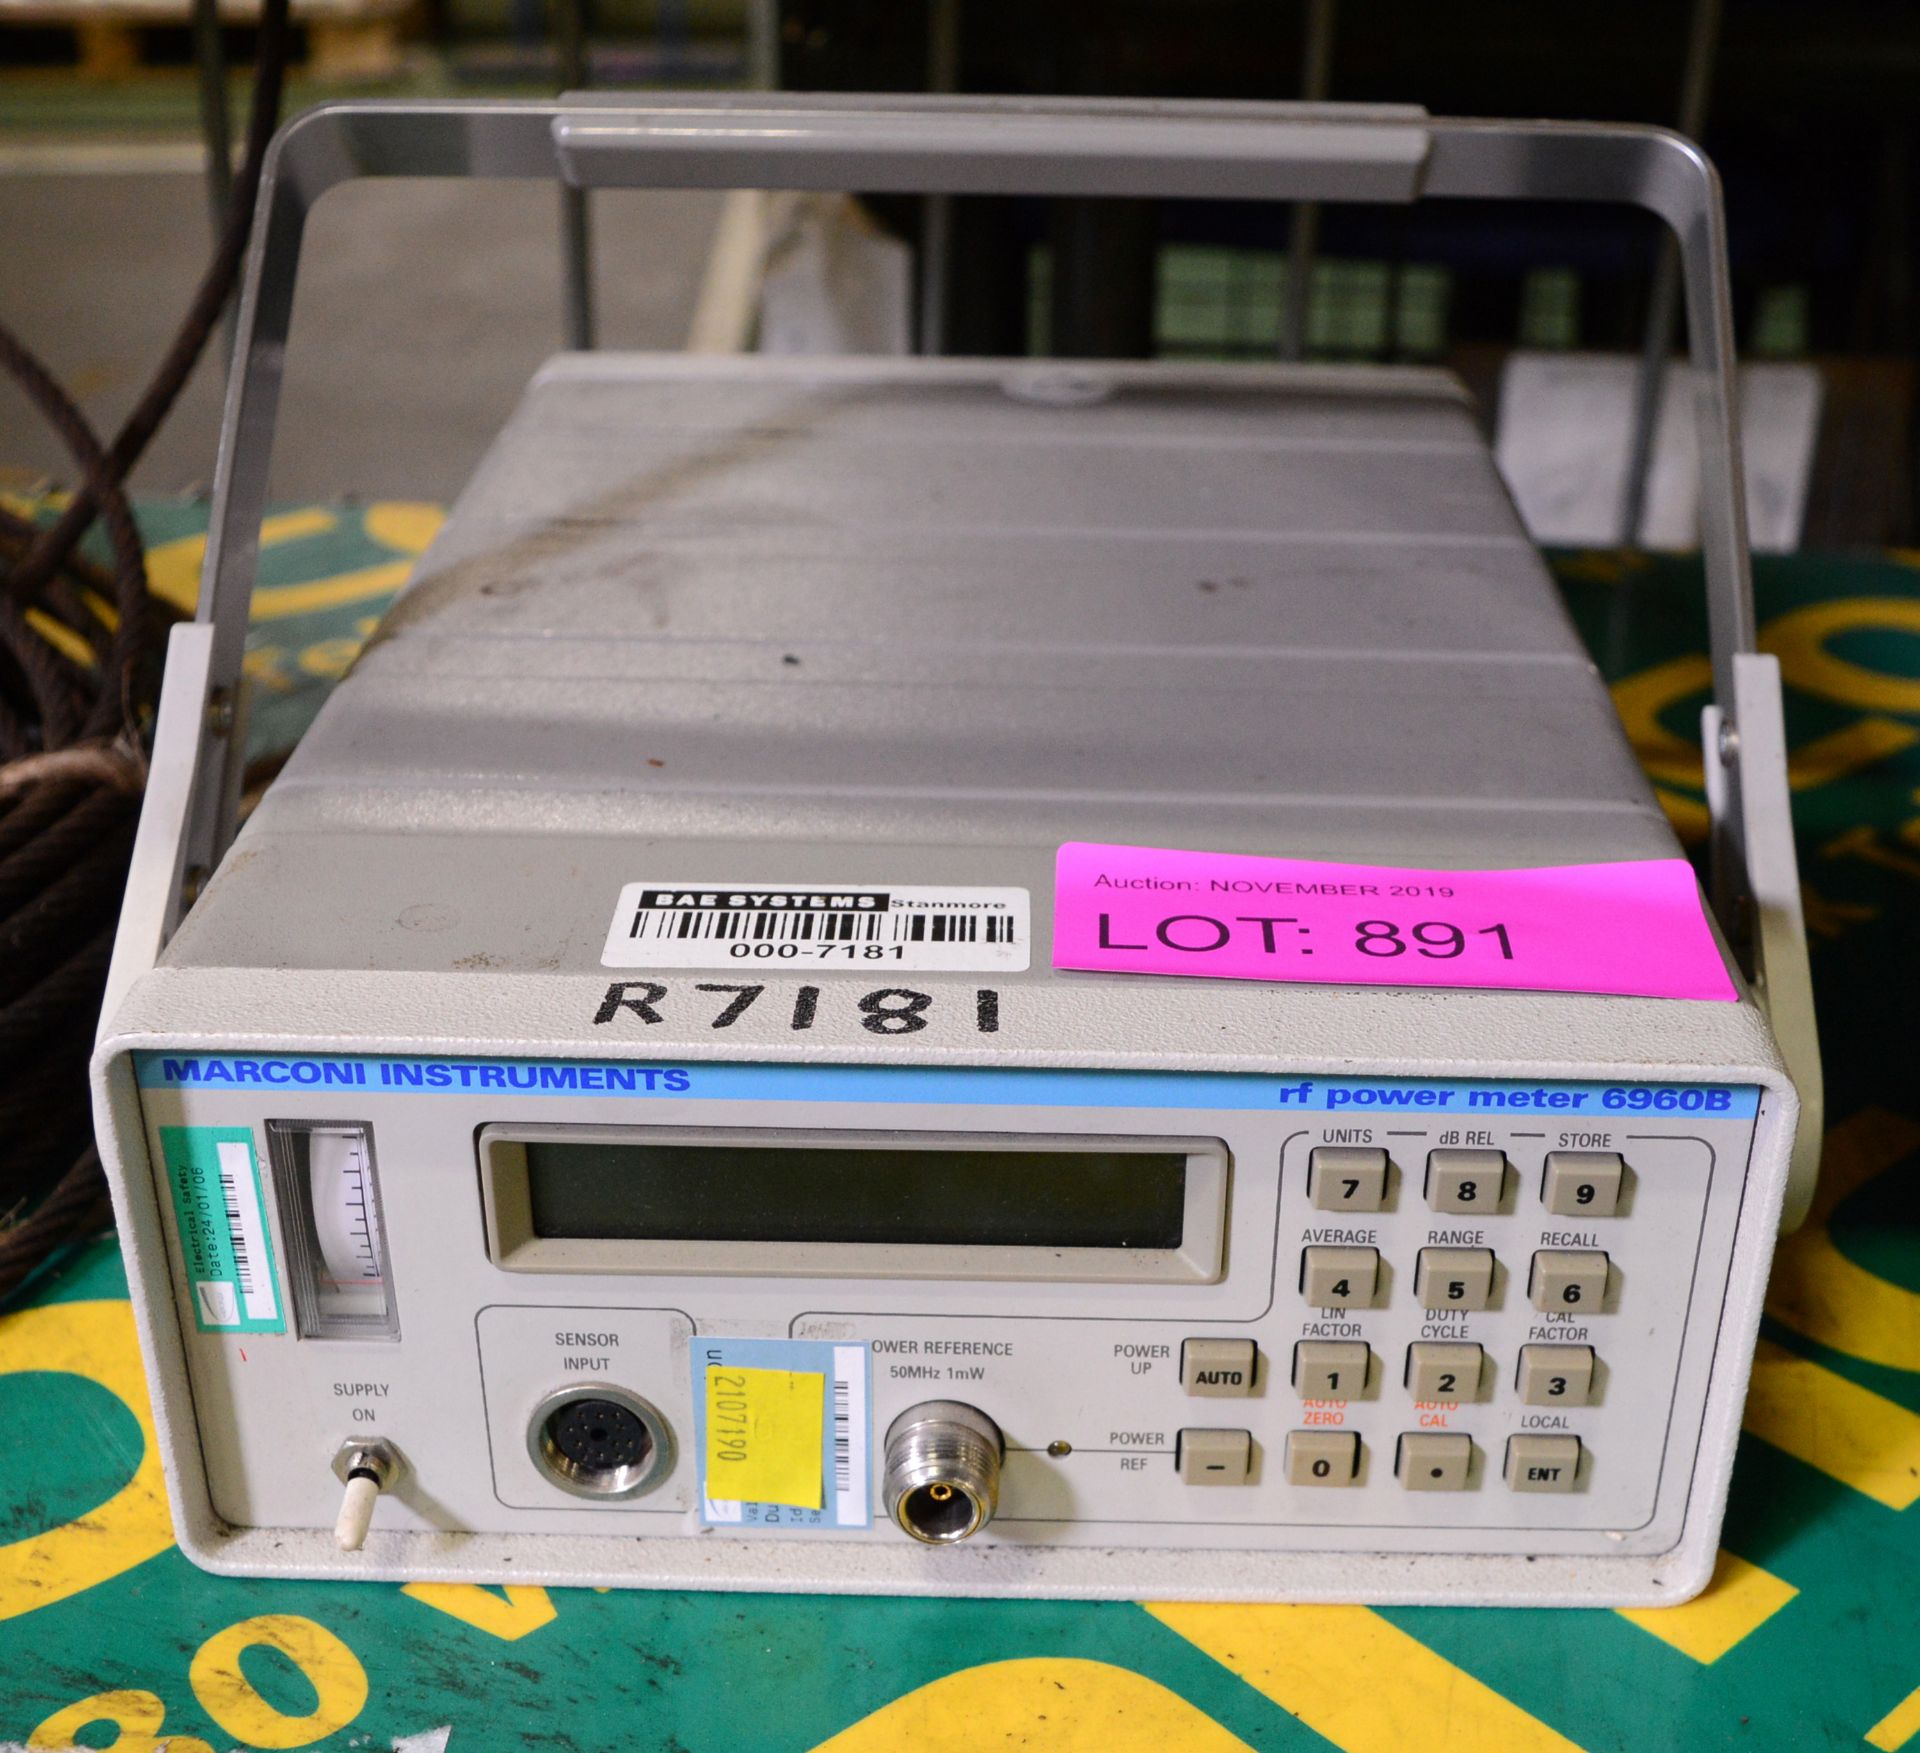 Marconi Instruments Power Meter.